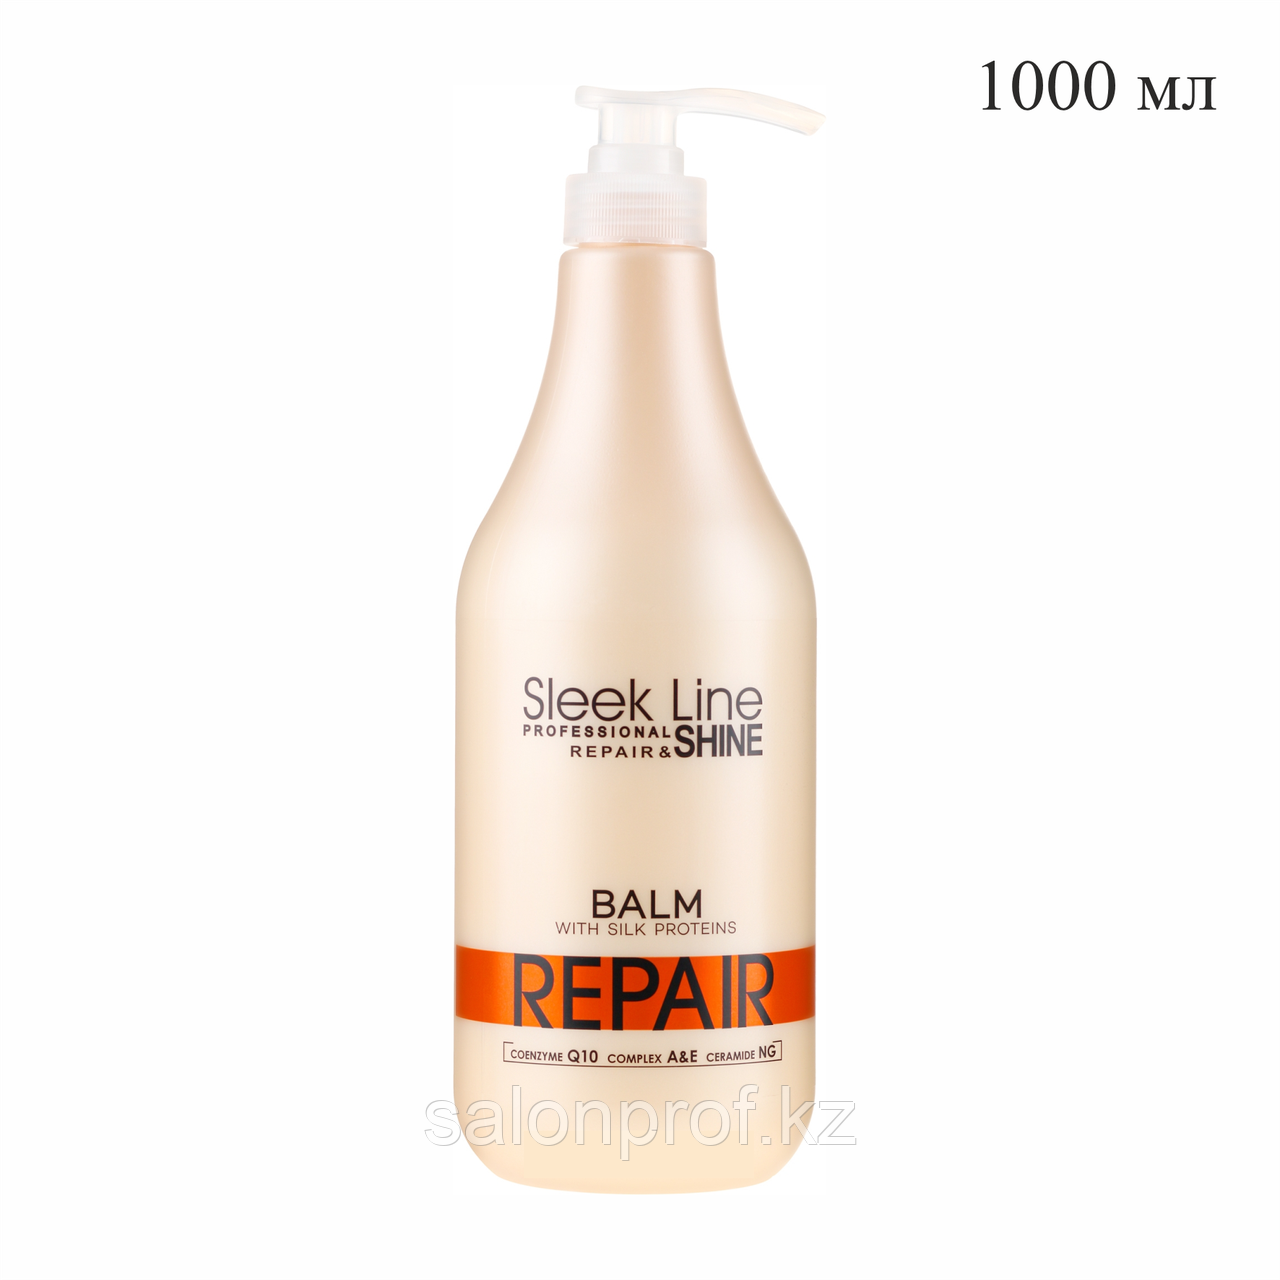 Бальзам для восстановления волос с протеином шелка SLEEK LINE REPAIR 1000 мл №10820